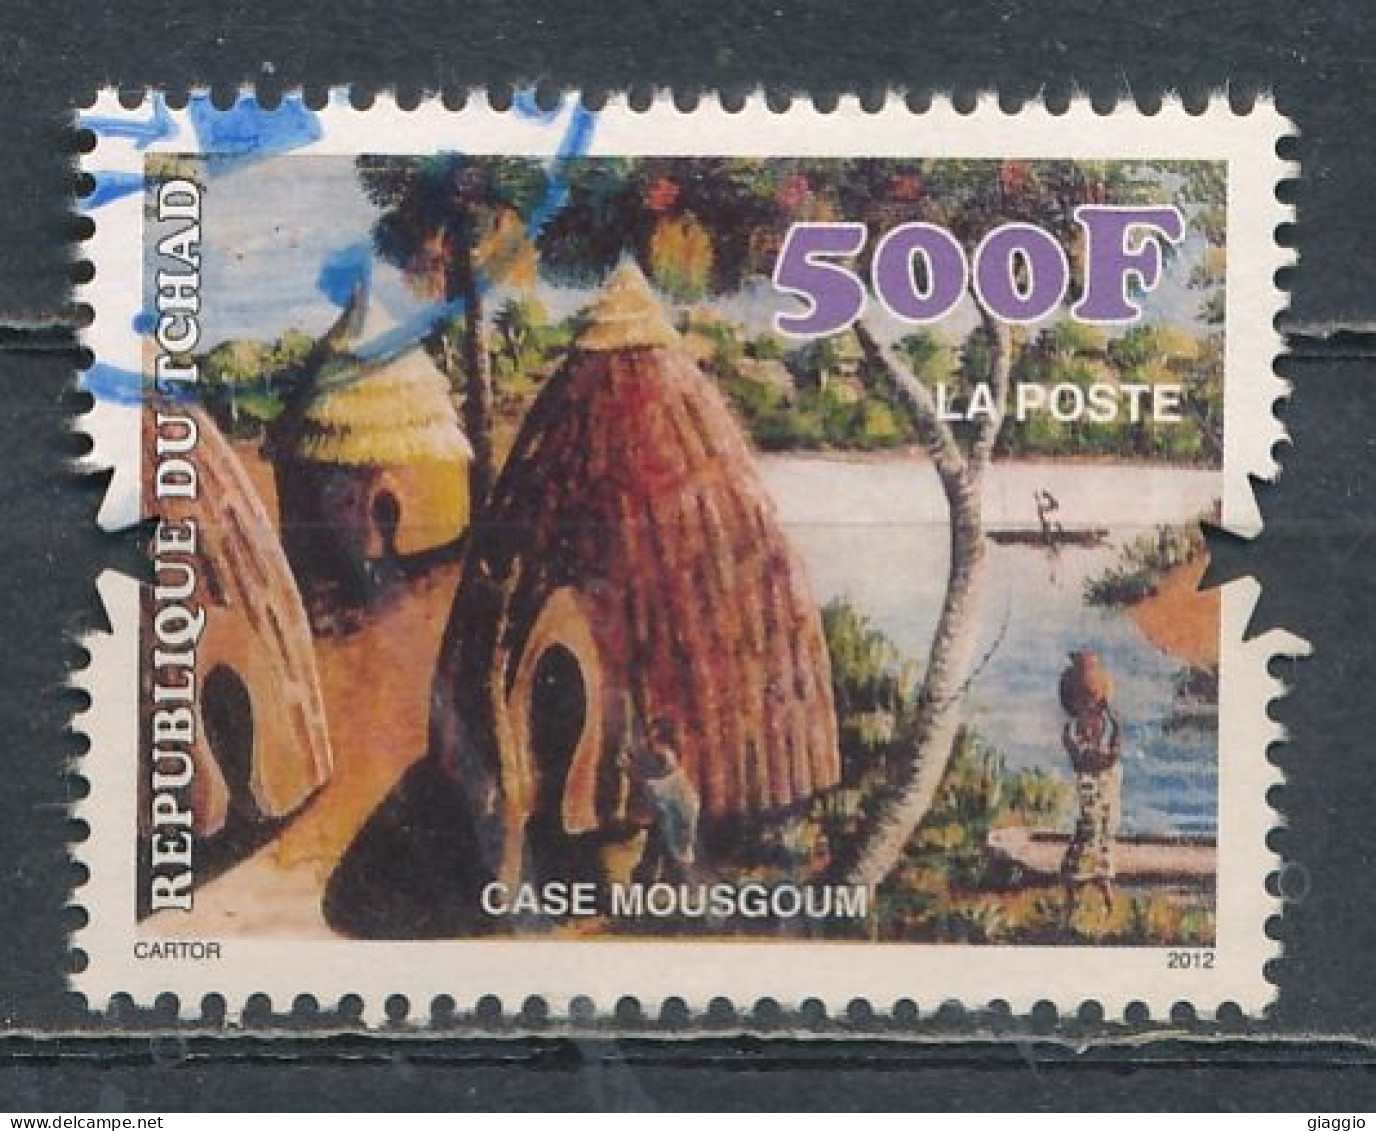 °°° TCHAD - CASE MOUSGOUM - 2012 °°° - Tchad (1960-...)